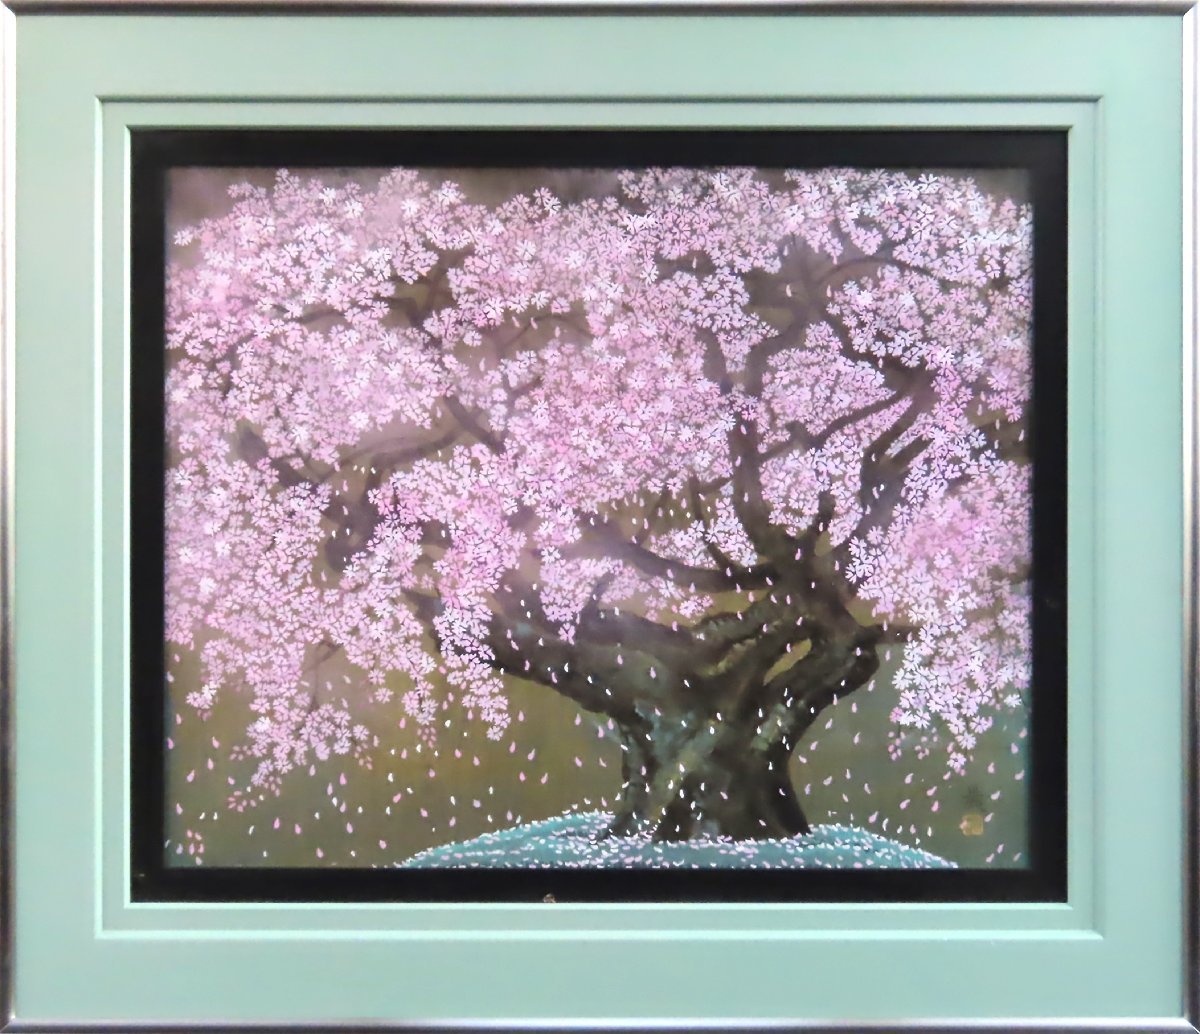 *Japanischer Fantasy- und Poesiemaler* Akira Sato Usuzumi Sakura Nr. 15 Fantastische Kirschblüten mit zarter Darstellung [Masamitsu-Galerie, 5000 ausgestellte Objekte] G, Malerei, Japanische Malerei, Blumen und Vögel, Vögel und Tiere